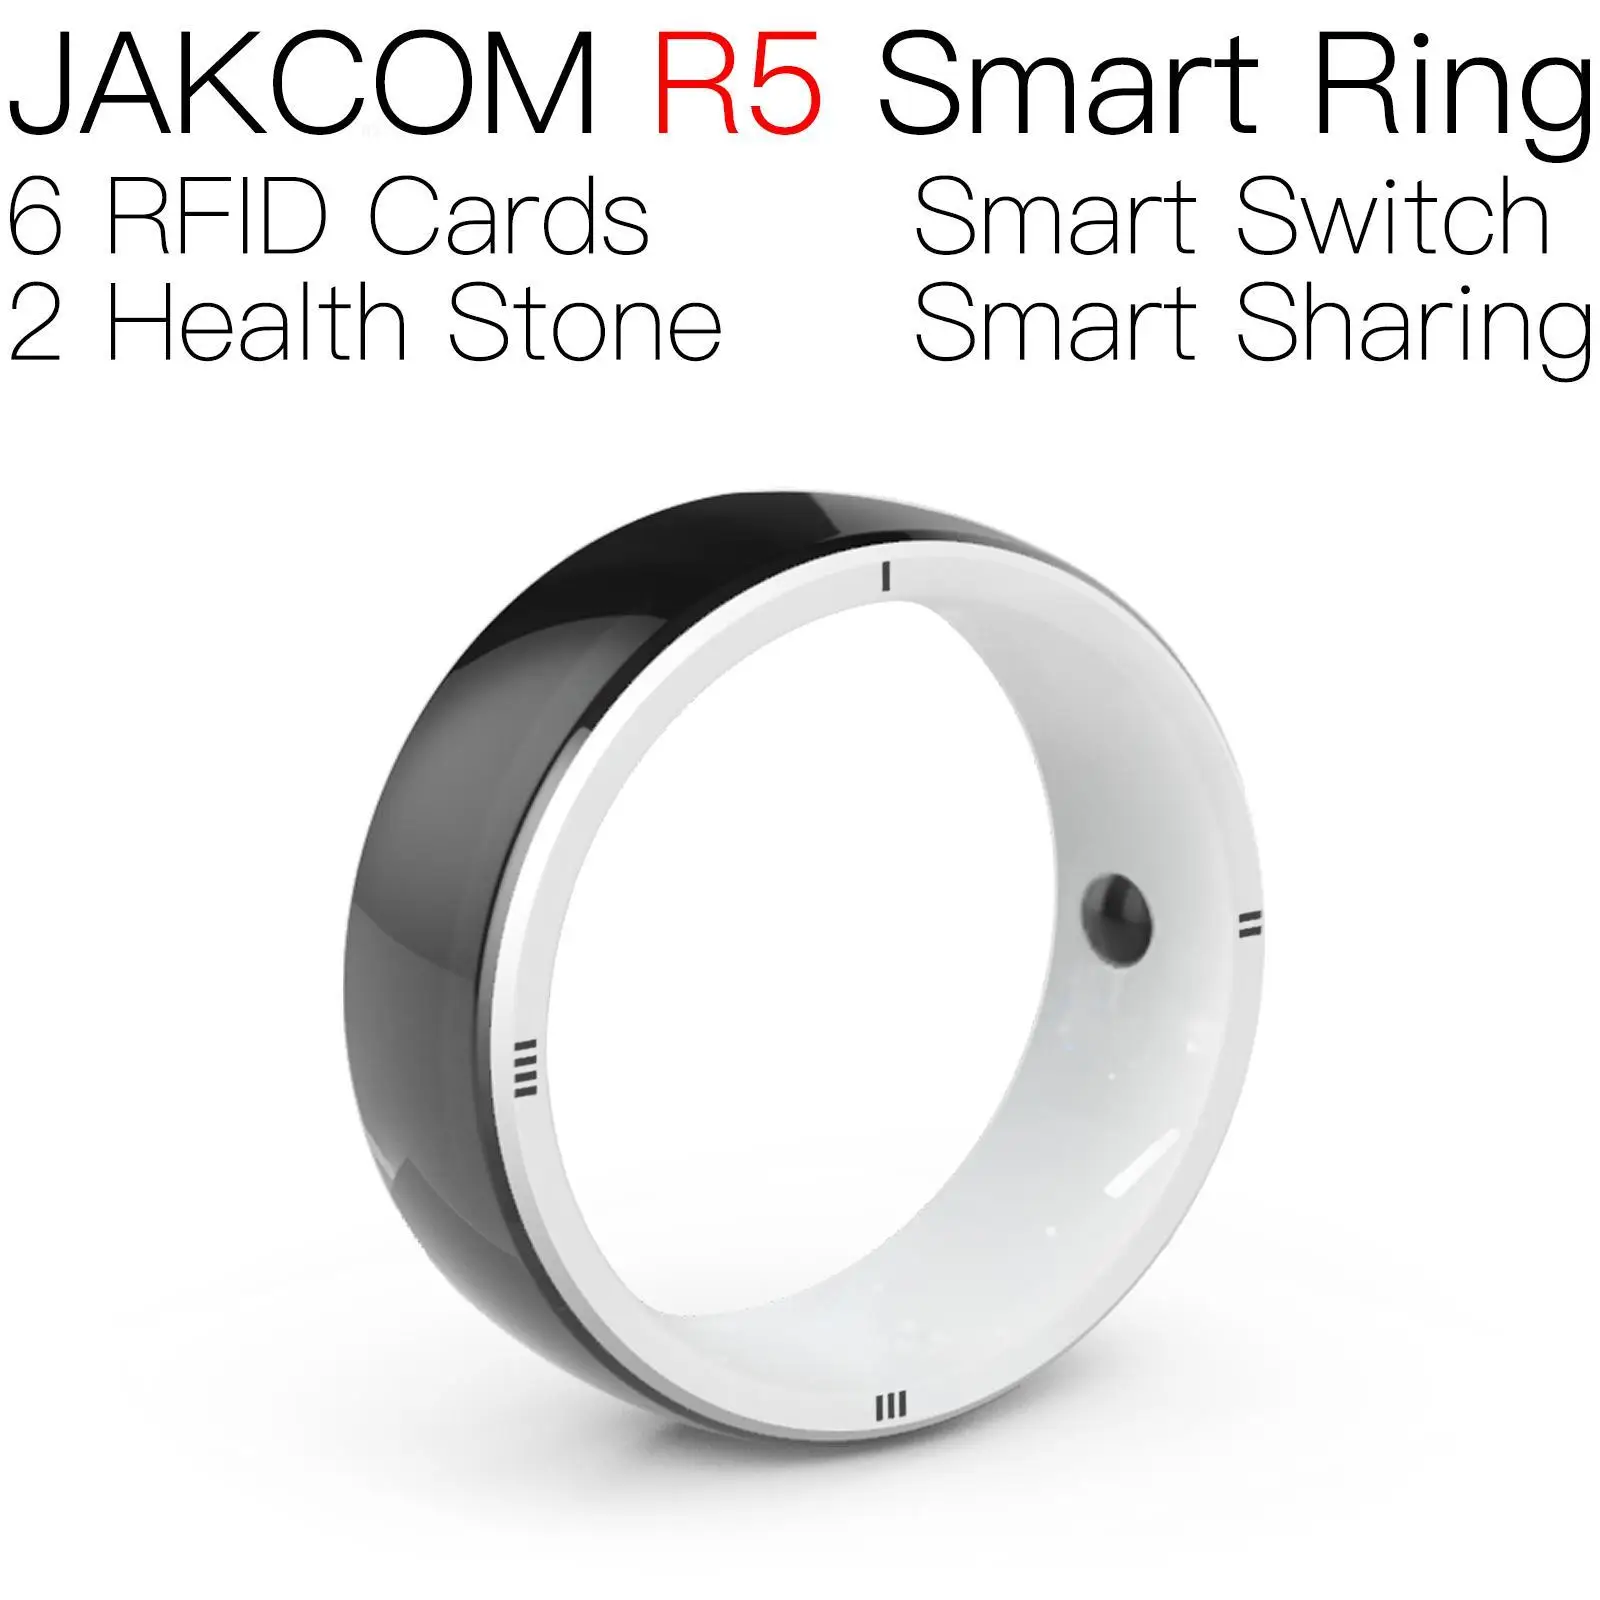 JAKCOM R5 Smart Žiedas Gražus kaip rfid žymę raktas fob chip stms207 mini kortelės eeprom carte jungiklis t5577 keychain micro uid nfc